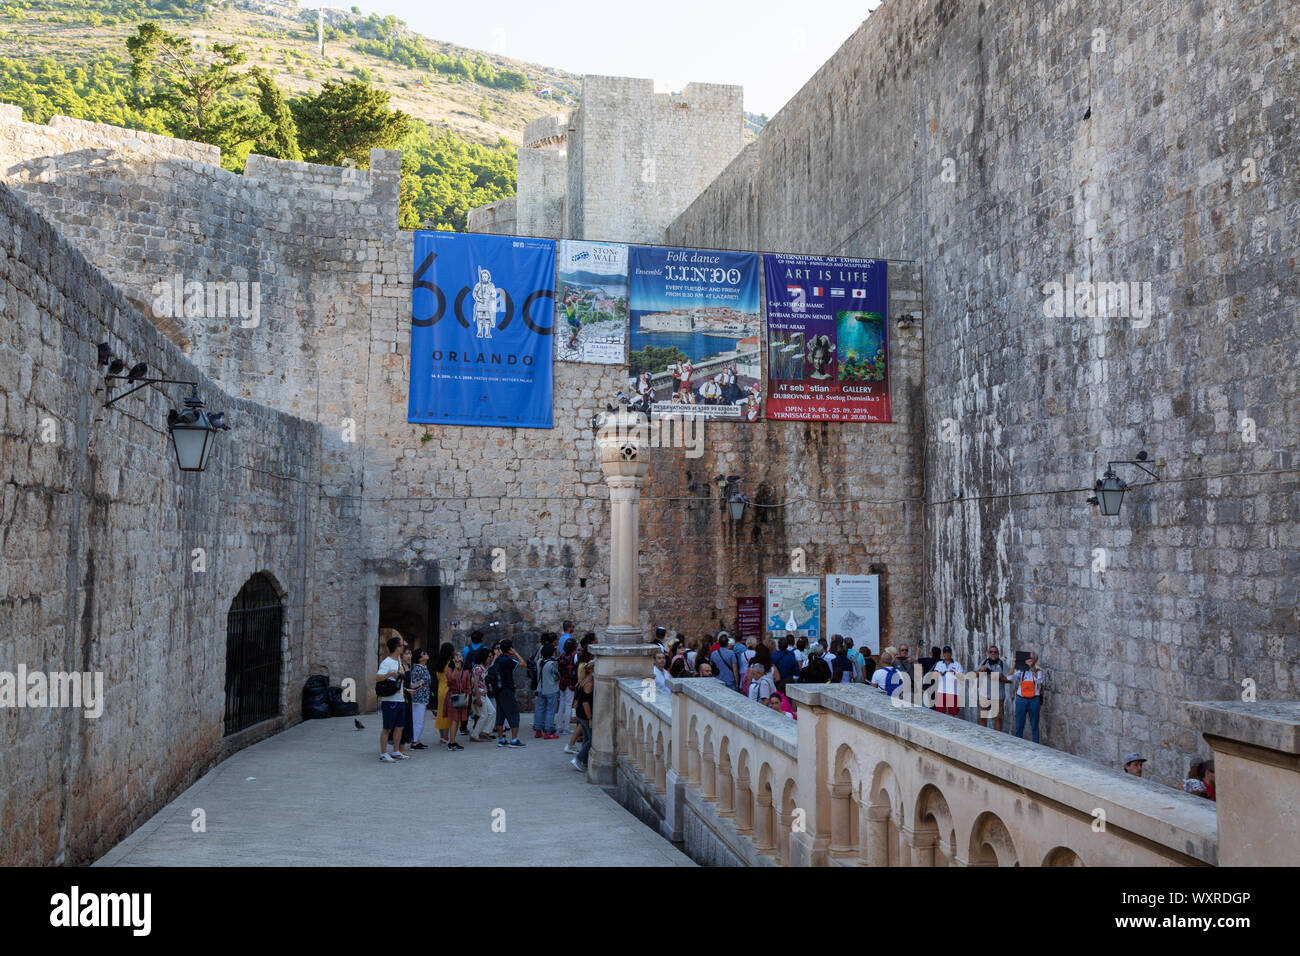 Dubrovnik la Puerta Pile, turistas que ingresan Dunbrovnik casco antiguo sitio de patrimonio mundial de la UNESCO a través de la Puerta Pile en los muros de la ciudad, Dubrovnik, Croacia Europa Foto de stock